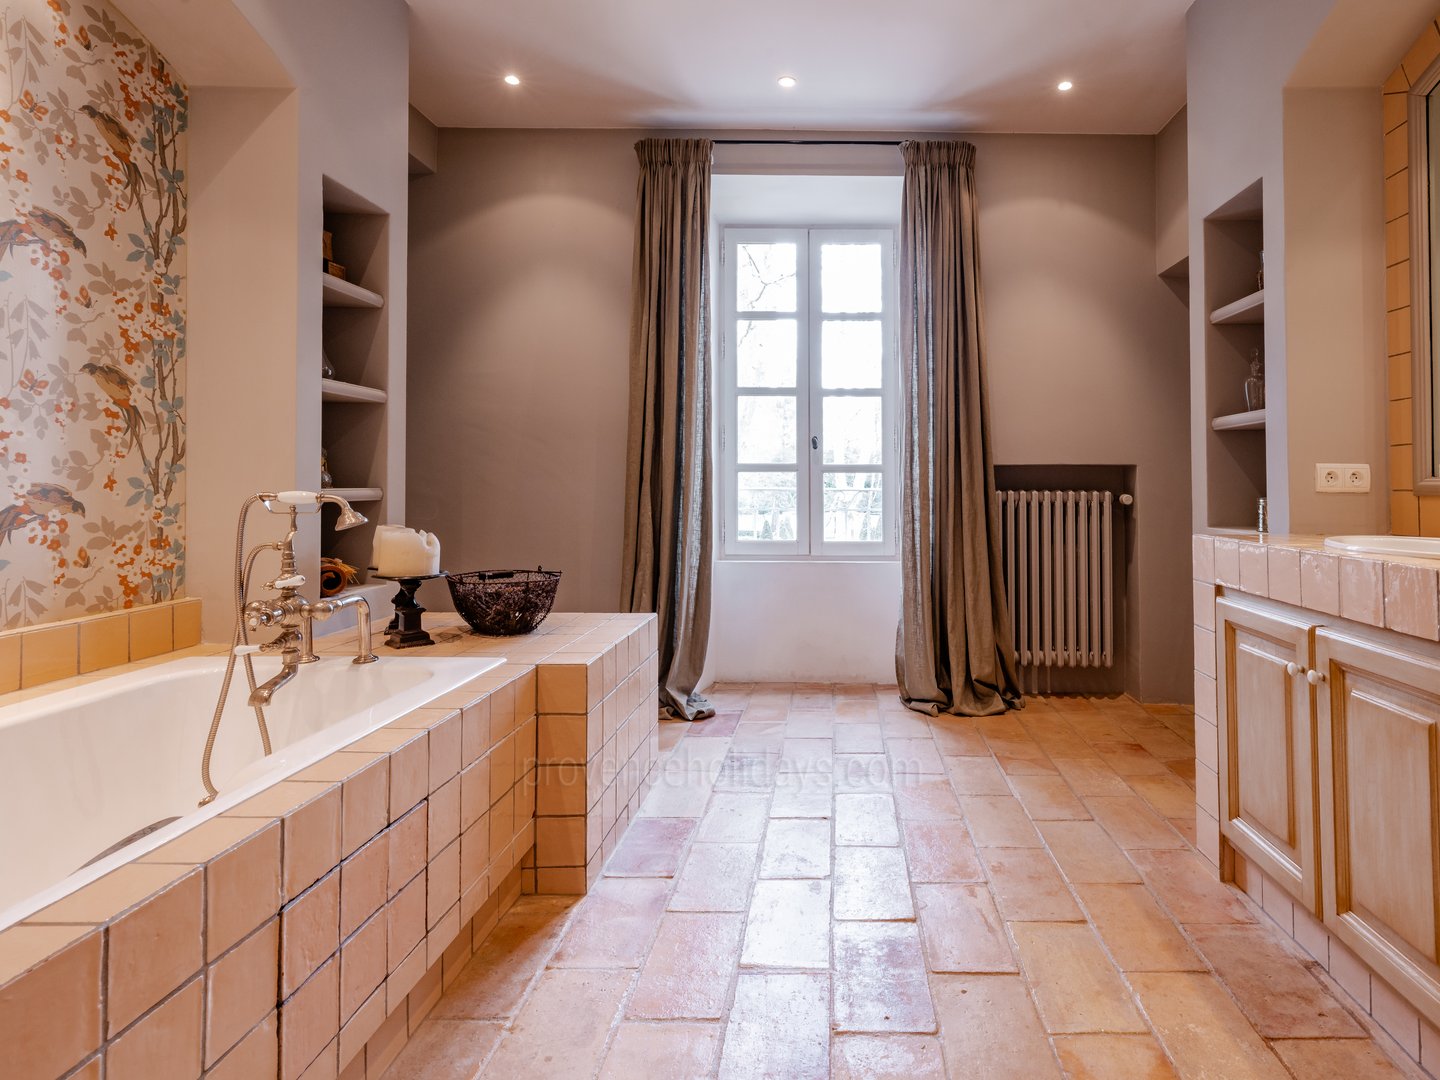 53 - Eden Provençal: Villa: Bathroom